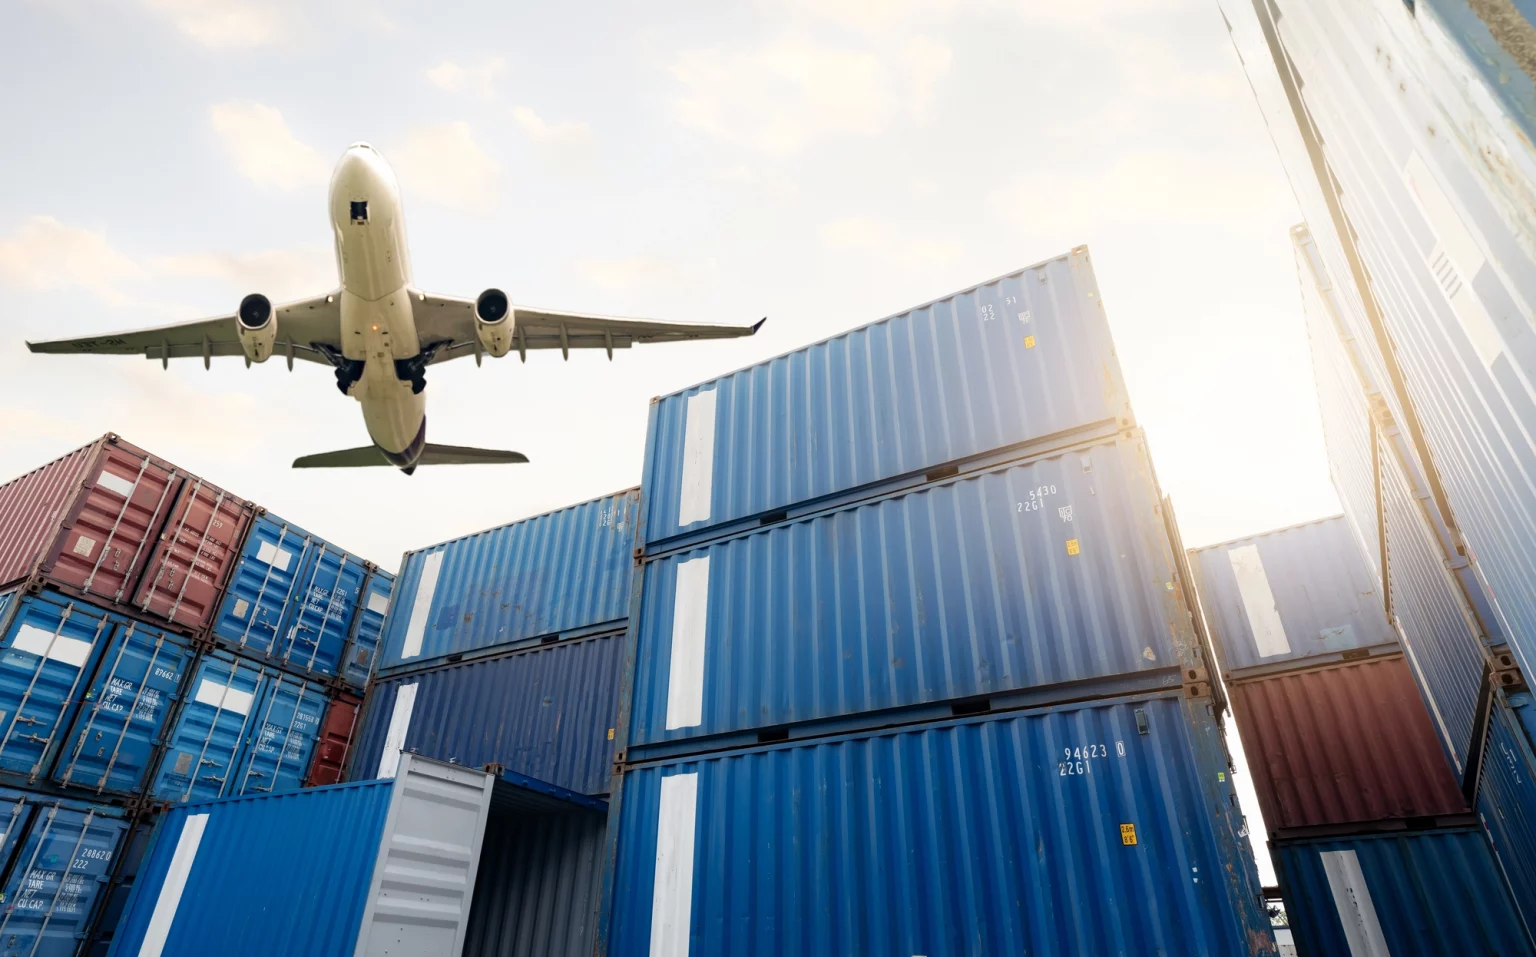 Avion-cargo en vol au-dessus d'une pile de conteneurs d'expédition, symbolisant les services de logistique aérienne pour le transport de marchandises à l'échelle mondiale.